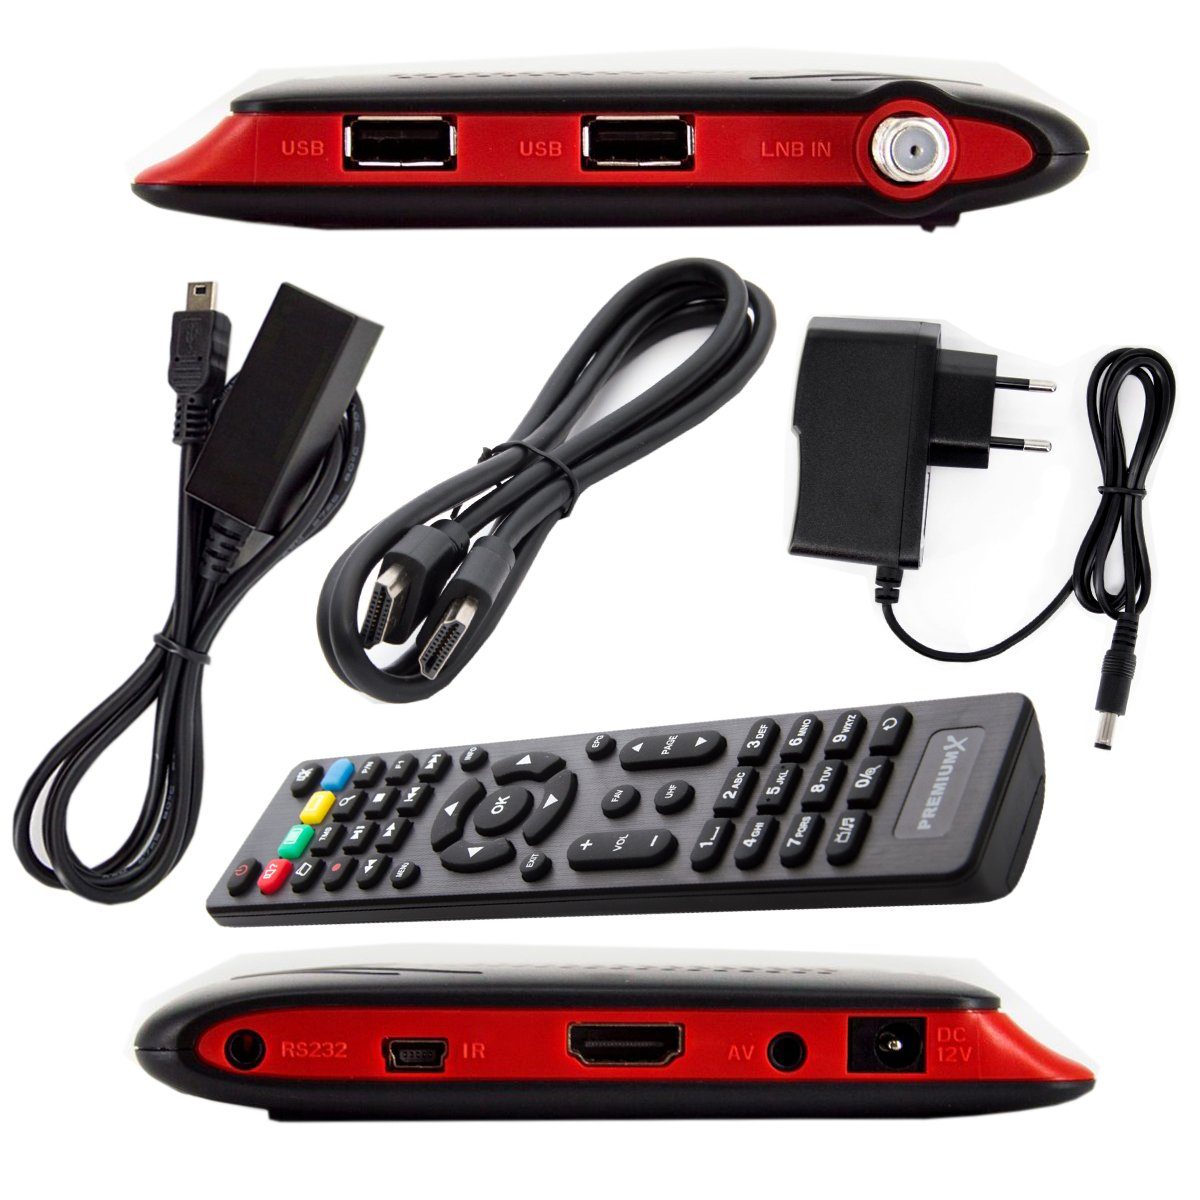 220S SAT-Receiver HDMI PremiumX DVB-S2 FULLHD USB Receiver Digital SAT Mini HD FTA